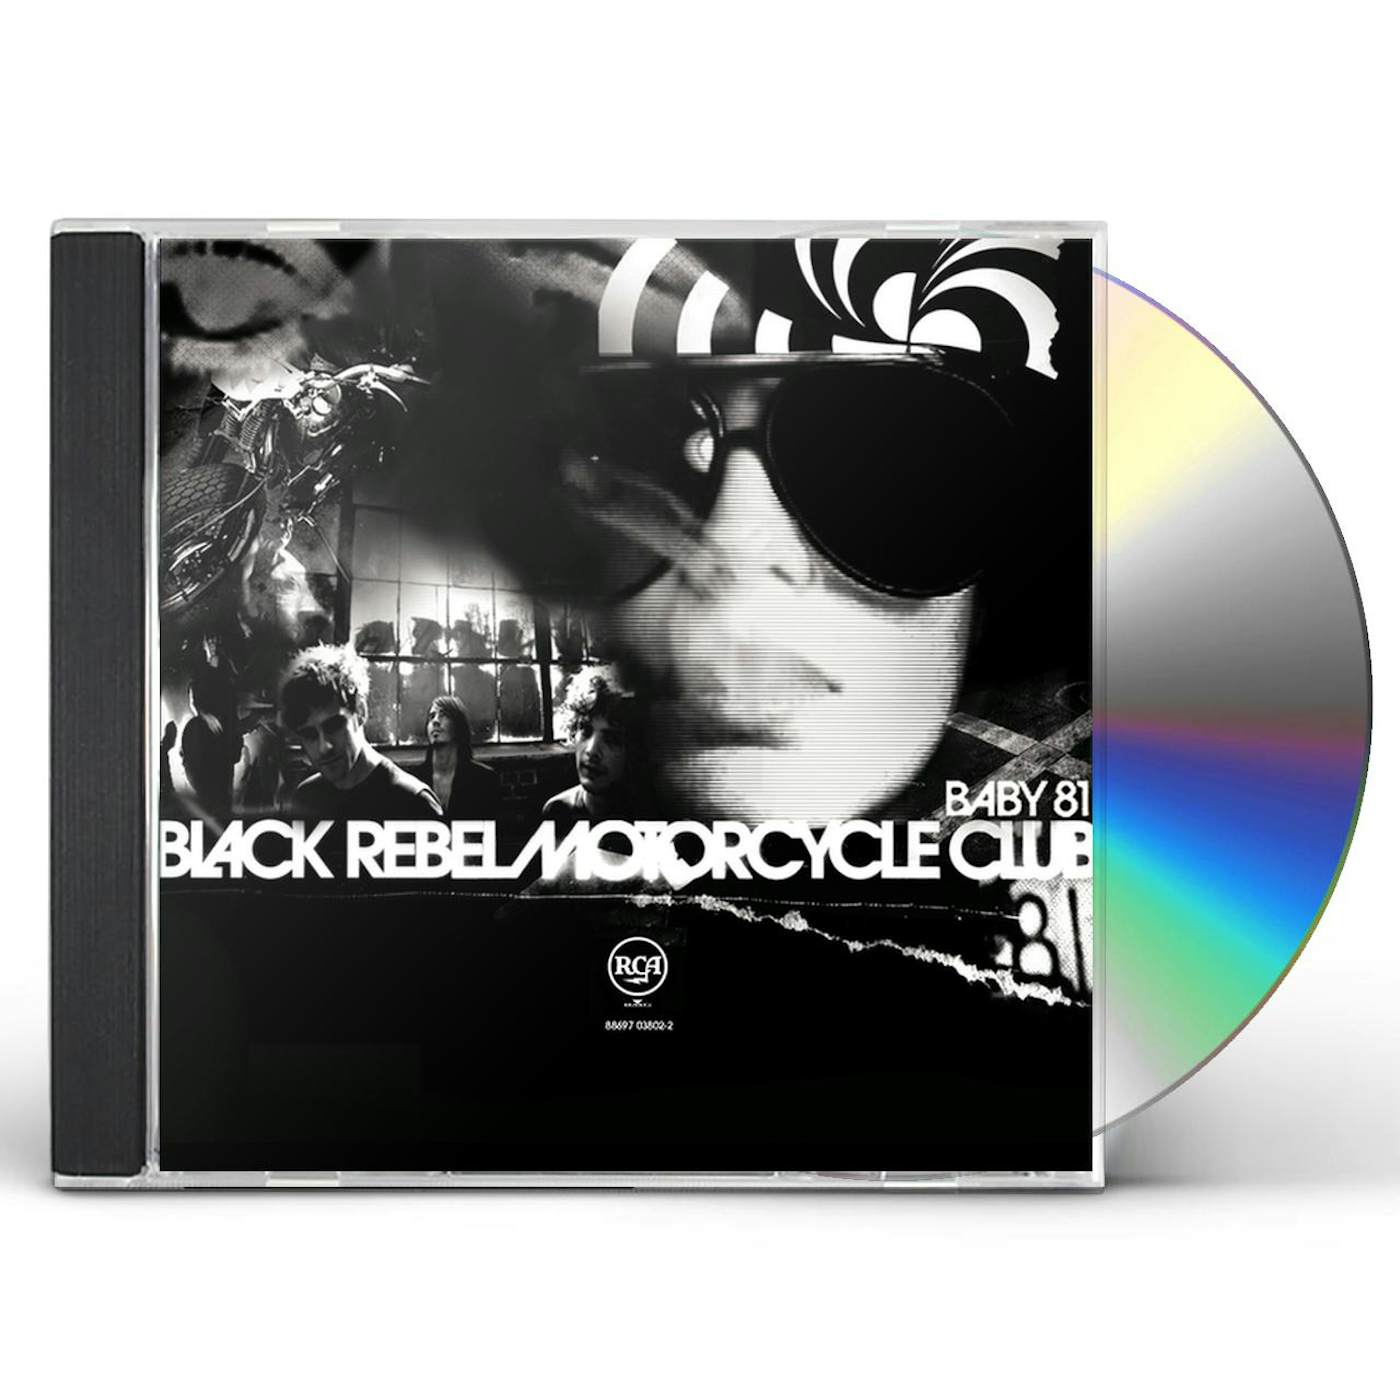 Black Rebel Motorcycle Club BABY 81 CD